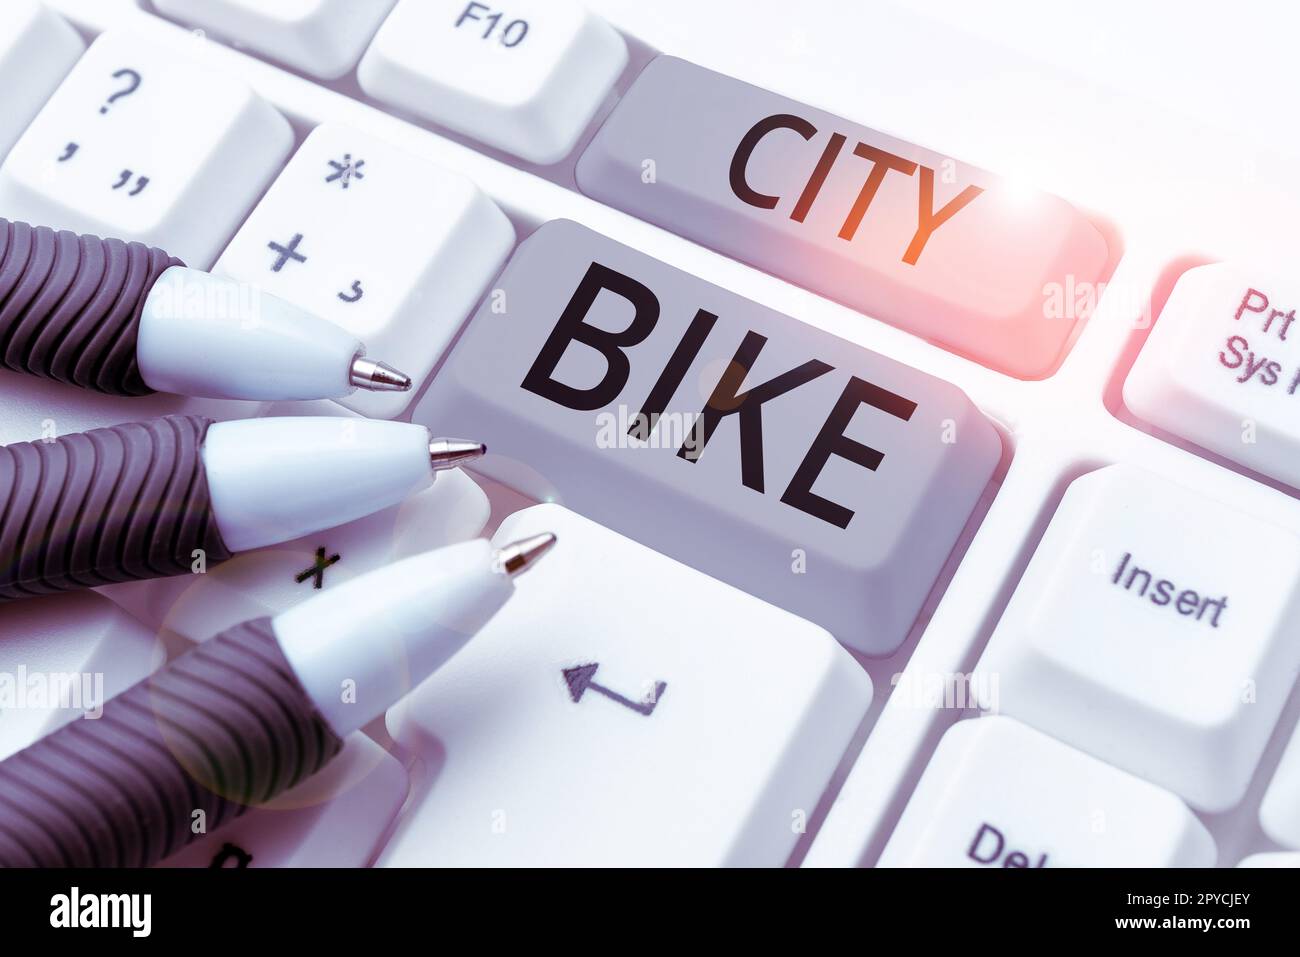 Konzeptausstellung City Bike. Konzept für regelmäßige kurze Fahrten durch ebenes Stadtgebiet Stockfoto